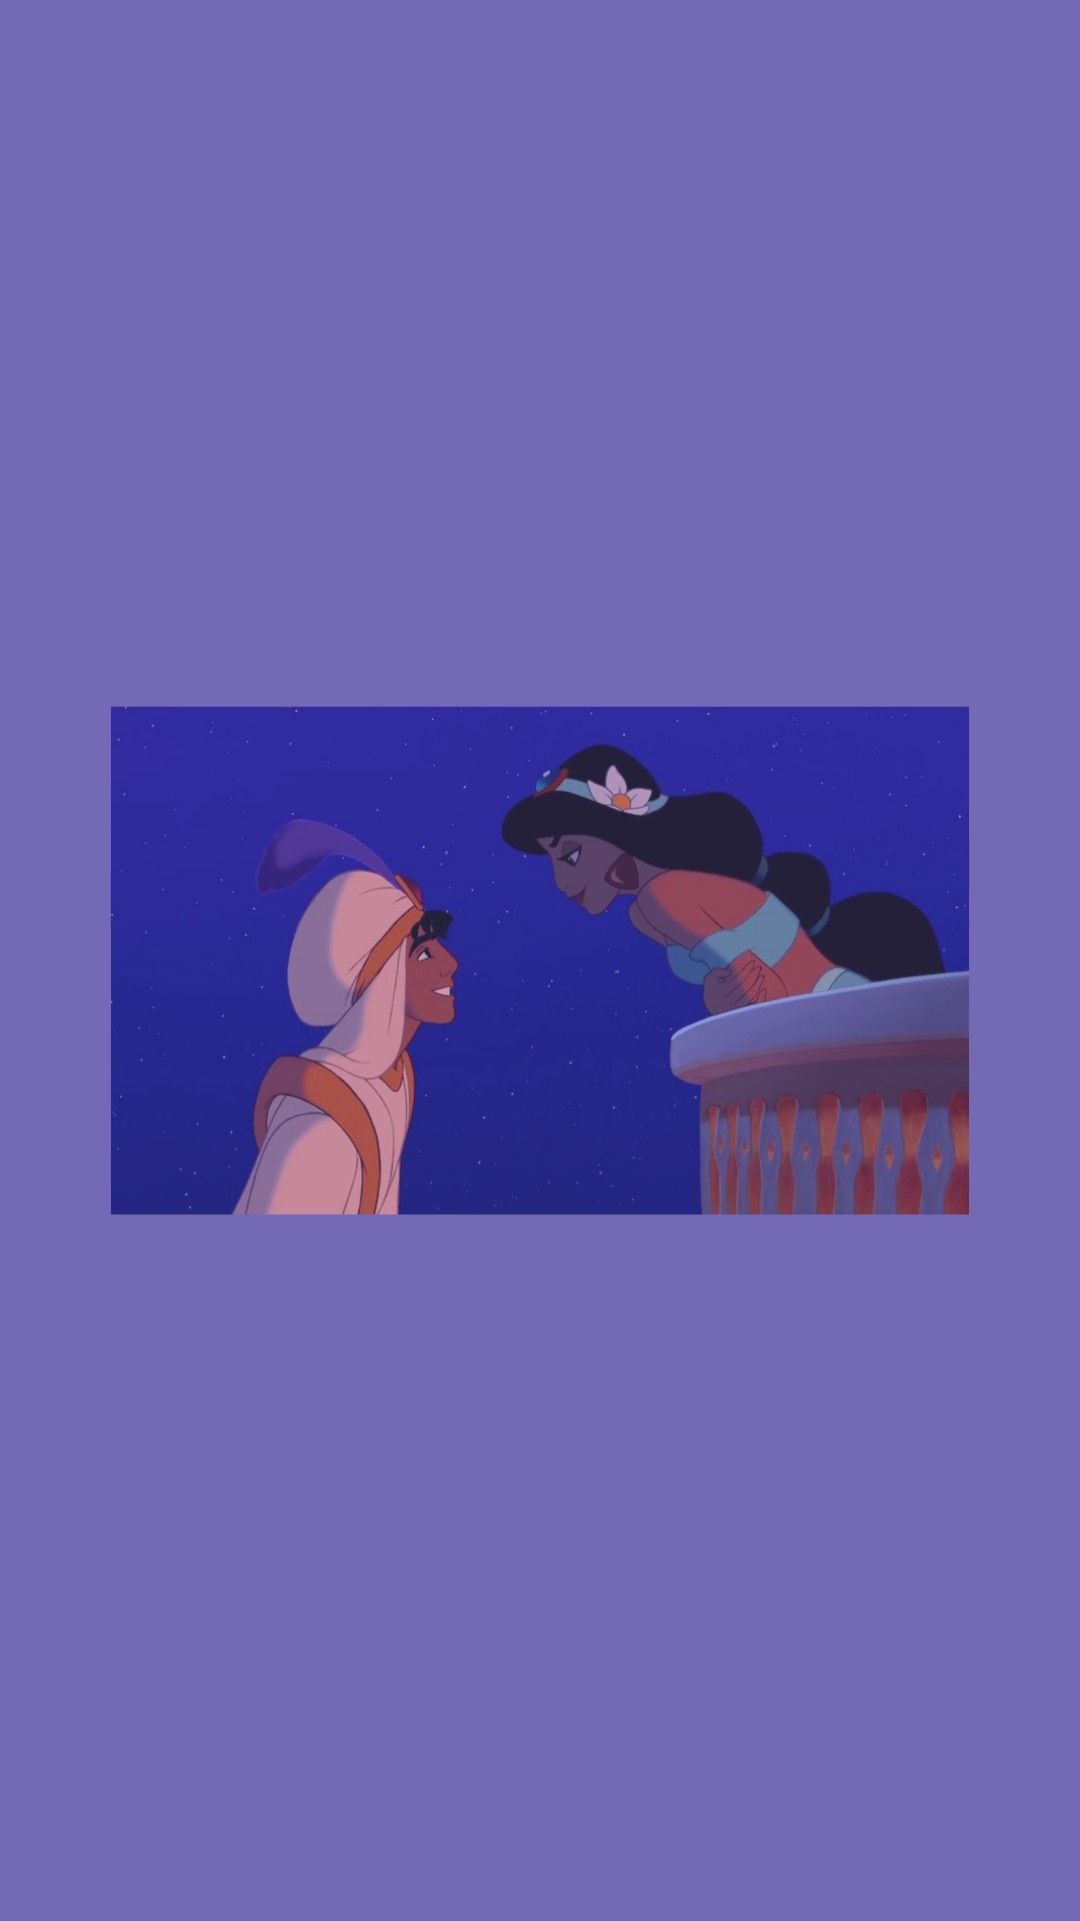 Aladdin and jasmine. Disney characters wallpaper, Disney wallpaper, Disney princess drawings